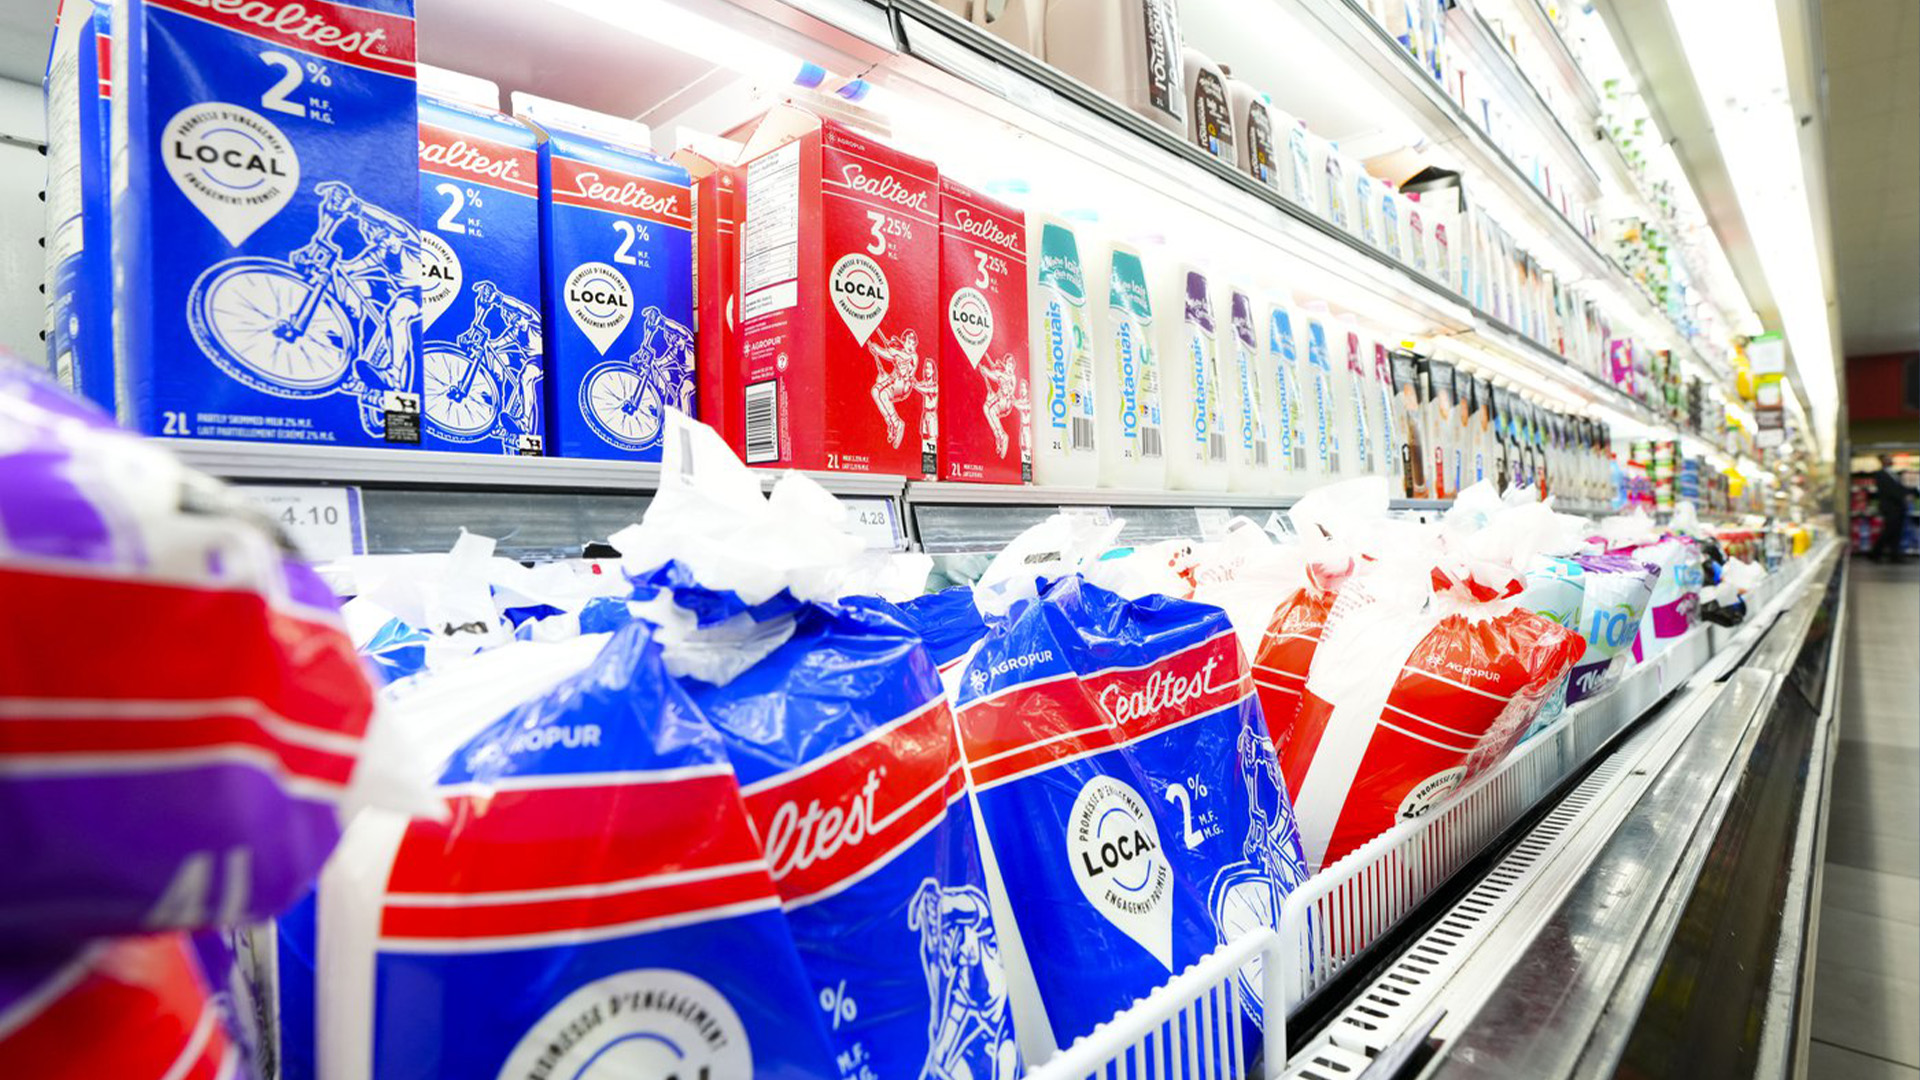 De nouveaux chiffres montrent que l’inflation de l’épicerie au Canada a de nouveau augmenté en novembre alors que le prix des produits de base comme le pain, les œufs et les produits laitiers a grimpé en flèche.